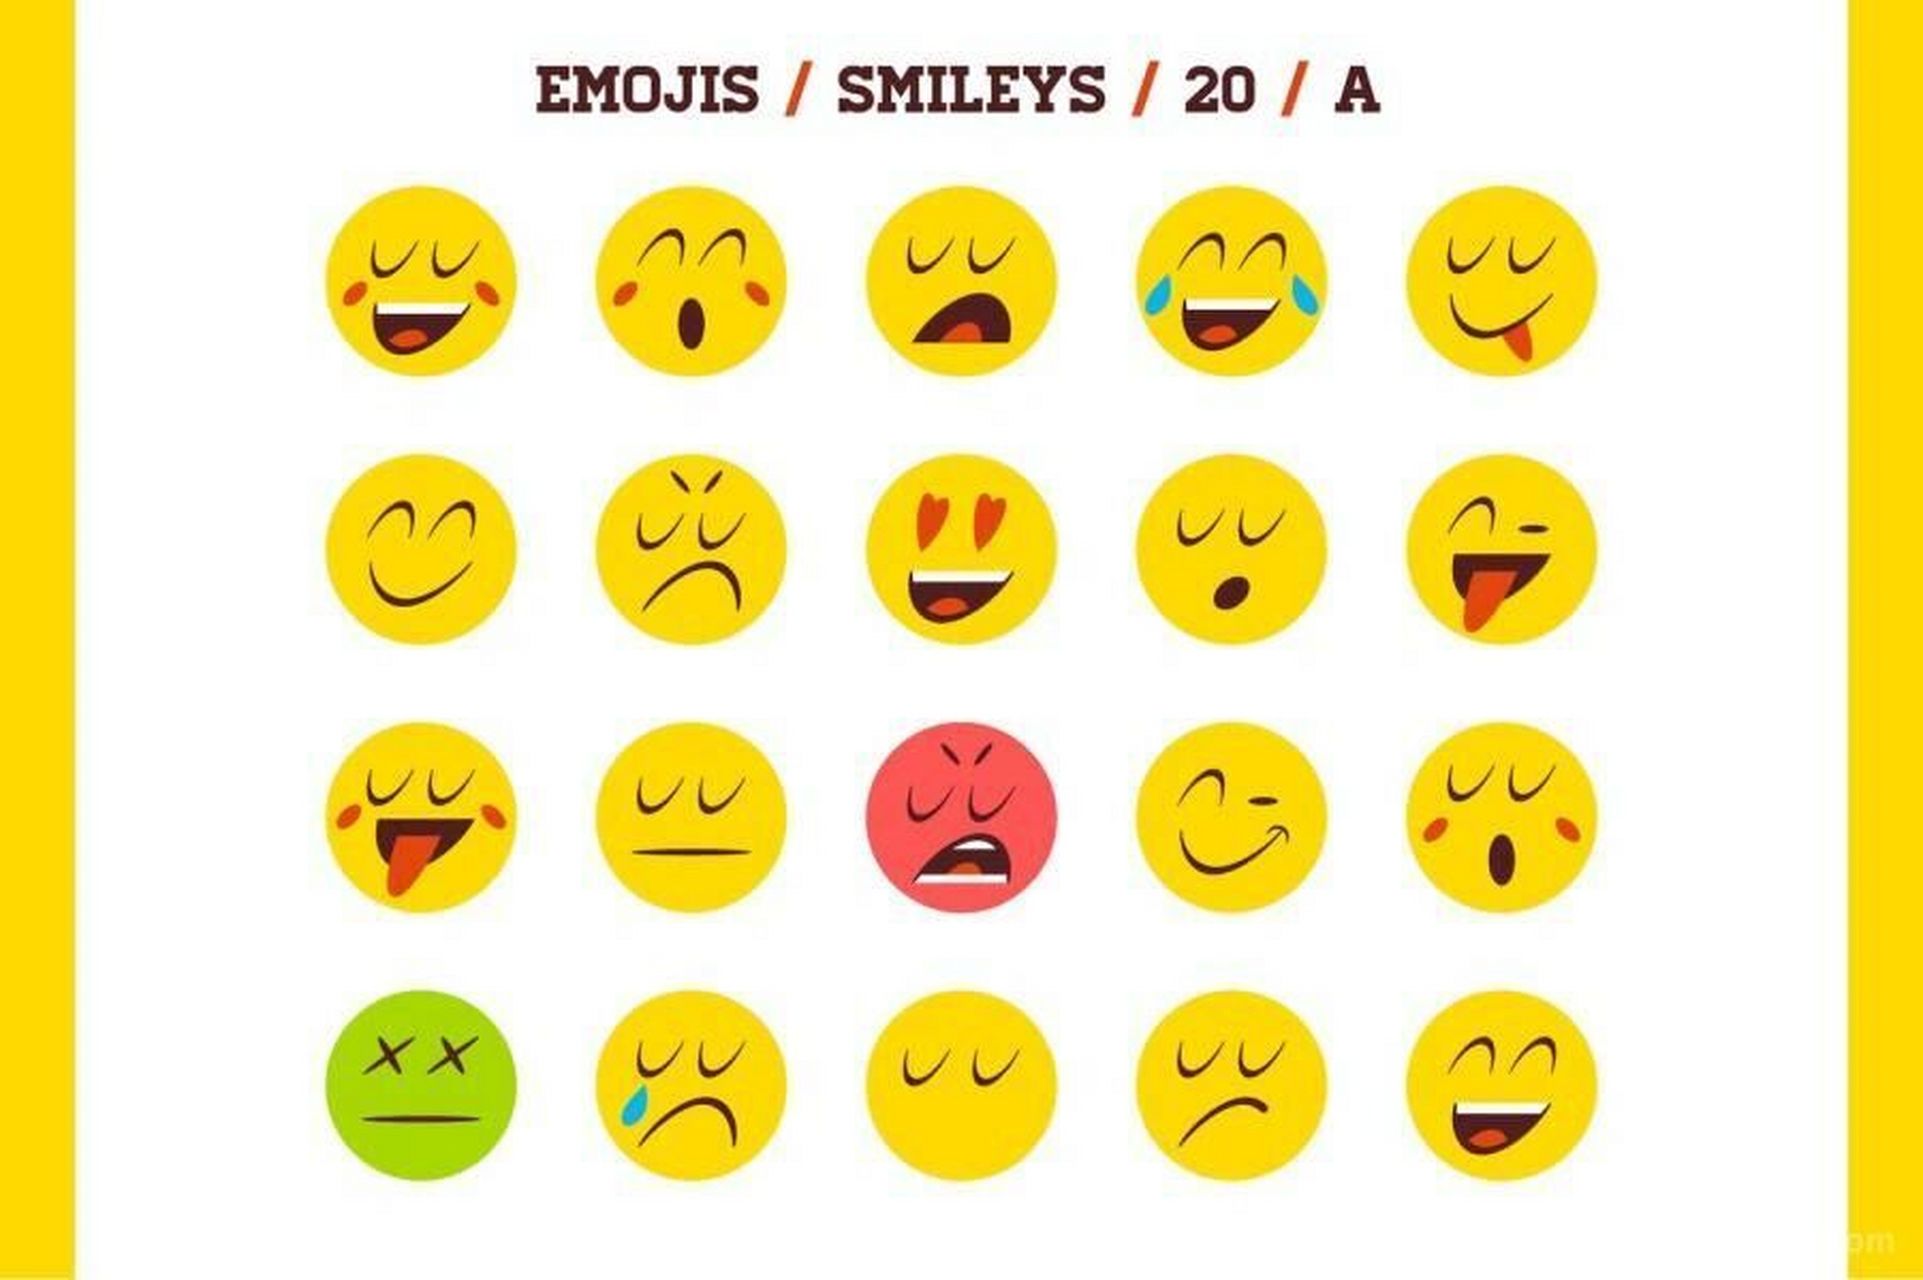 emoji表情组合图图片